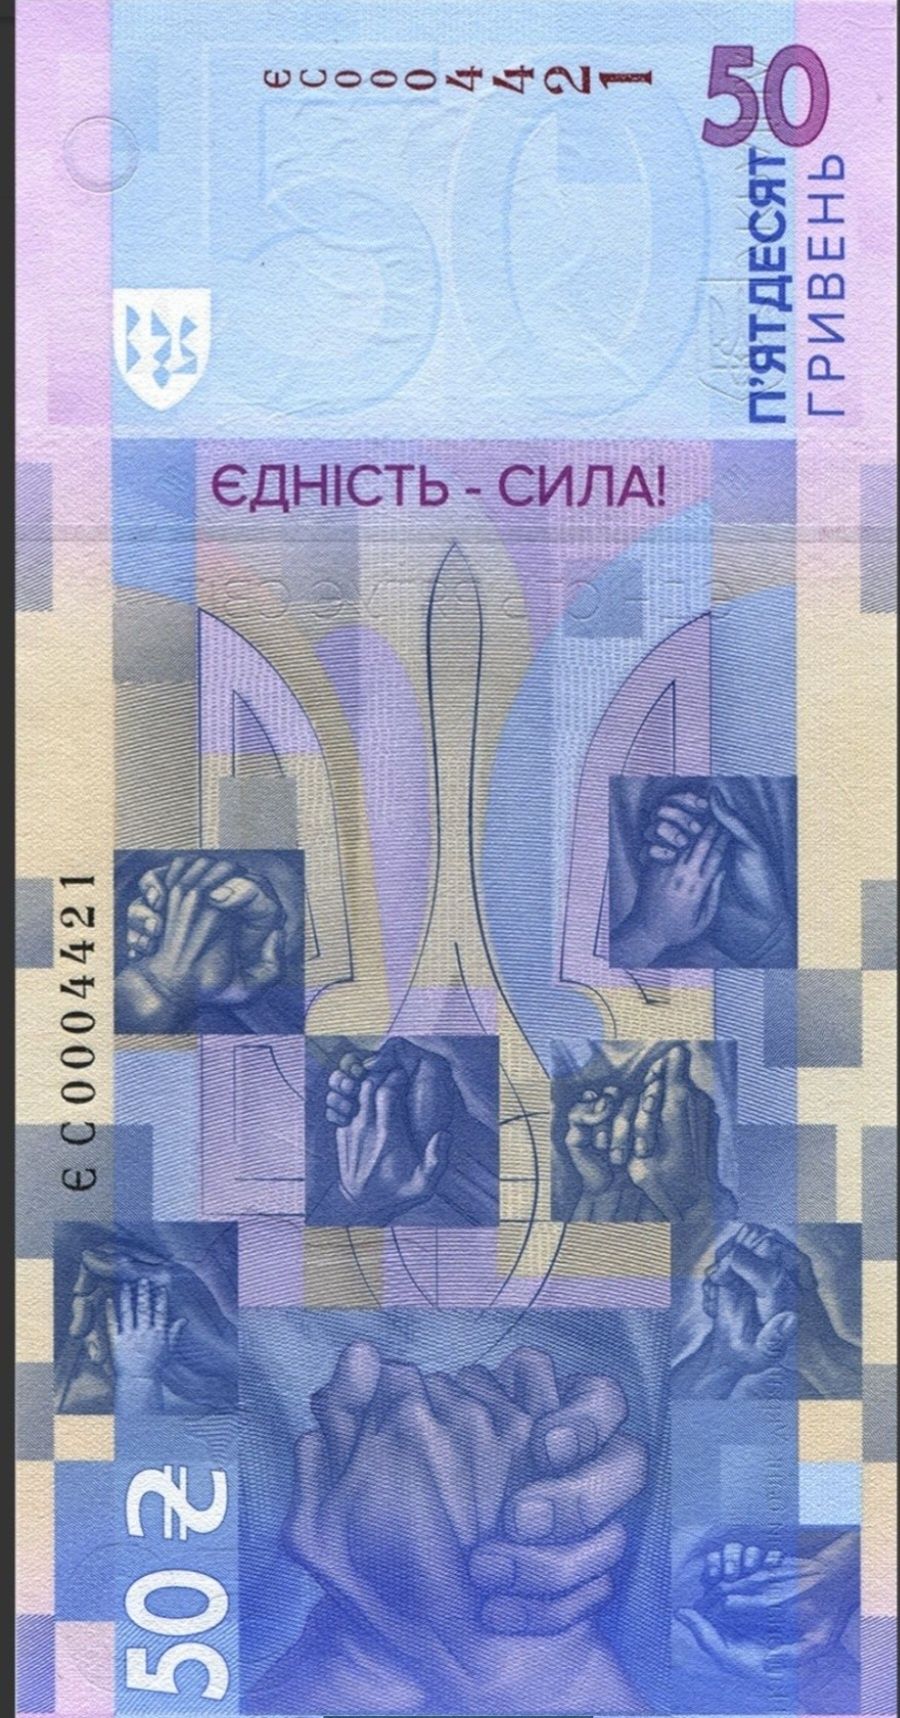 Пам’ятна банкнота 50 грн "Єдність рятує світ "